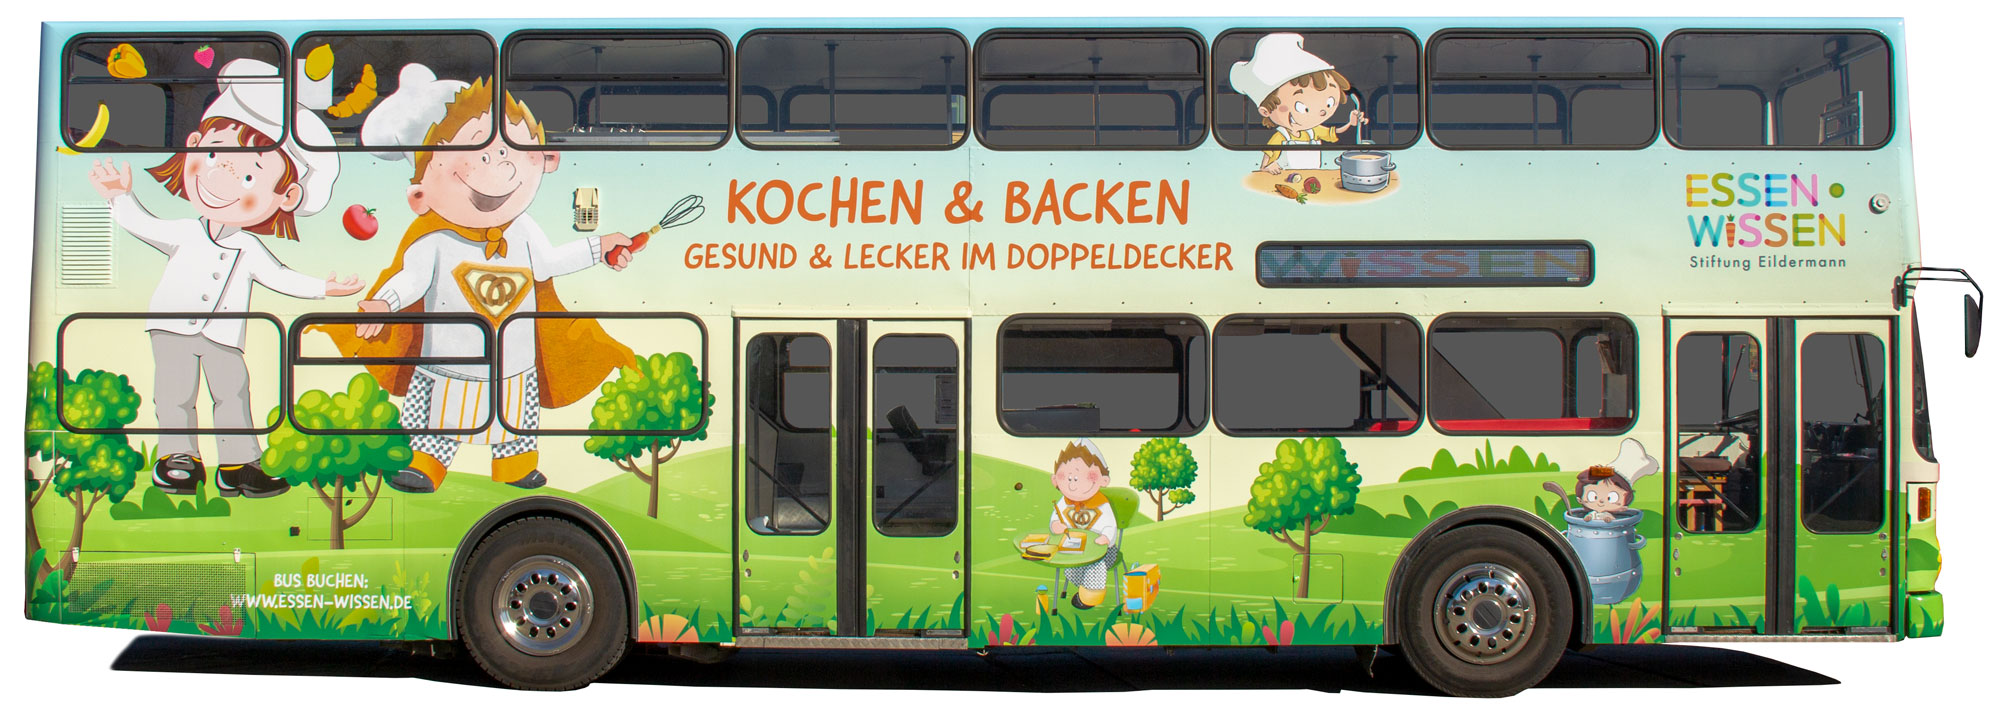 Koch-Backbus-rechte-Seite